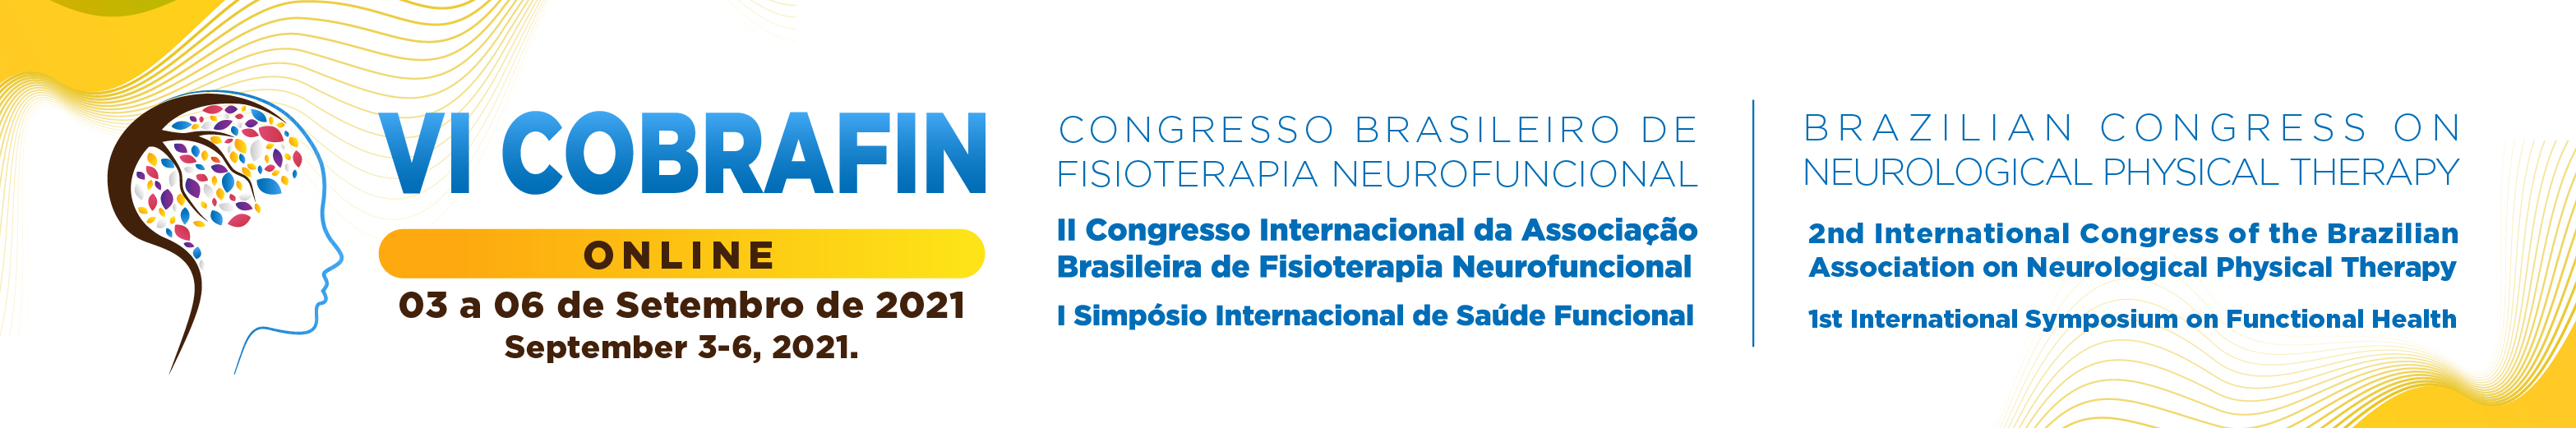 VI Congresso Brasileiro de Fisioterapia Neurofuncional